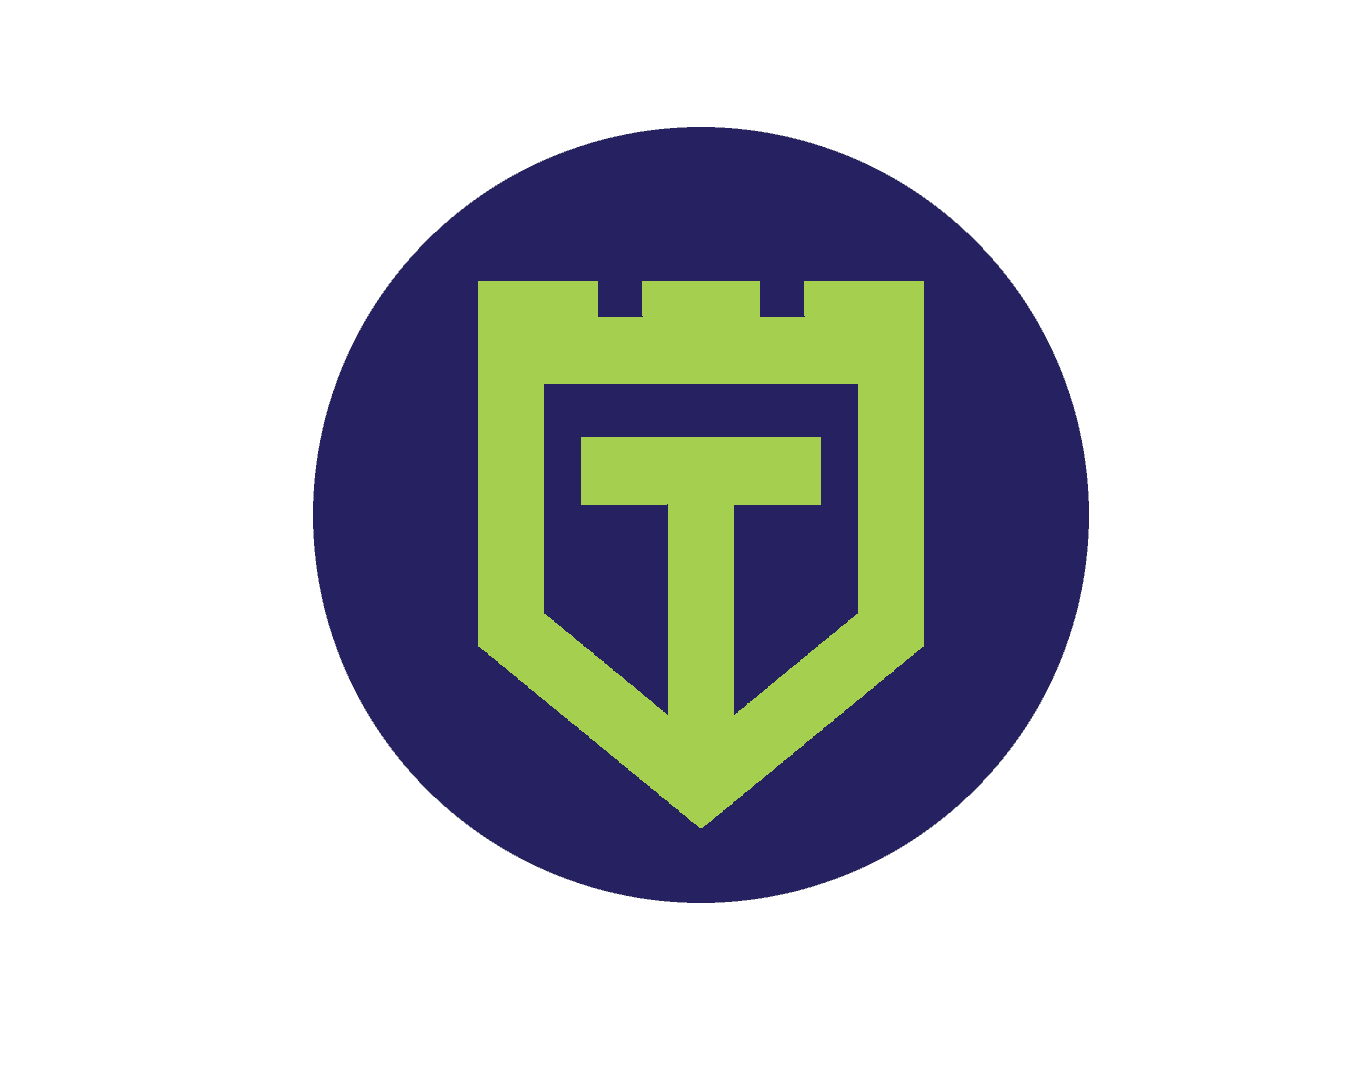 TestGuild-Round-Purple-Green-Logo